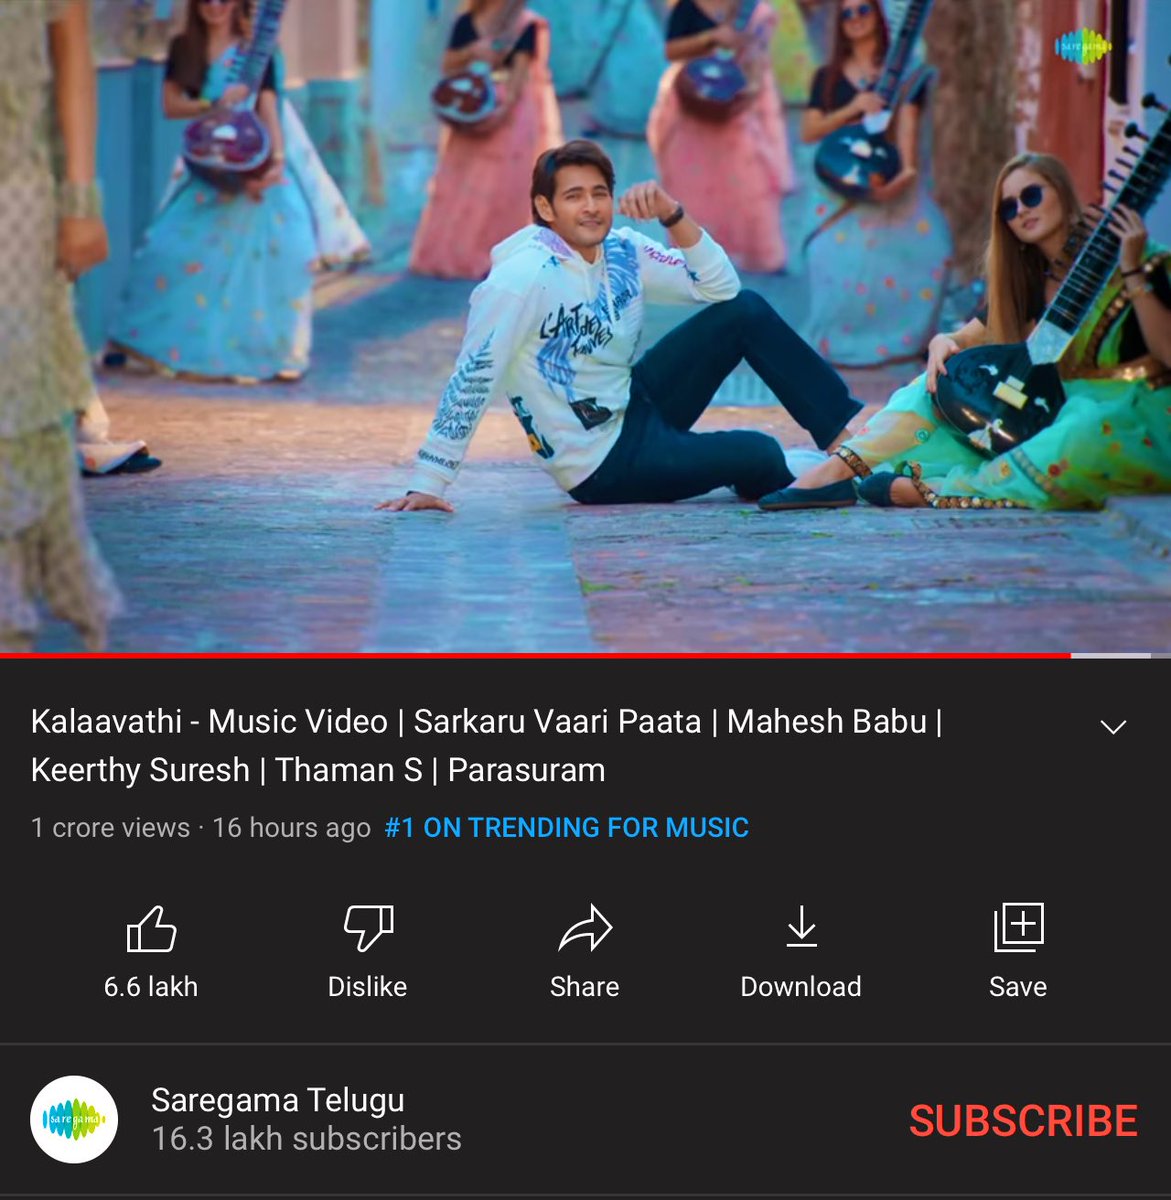 #Kalaavathi ON TOP !! ⭐️💿 #SuperStarShining  #SVPFirstSingle #SarkaruVaariPaataMusic #SarkaruVaariPaata 💃🎵♥️